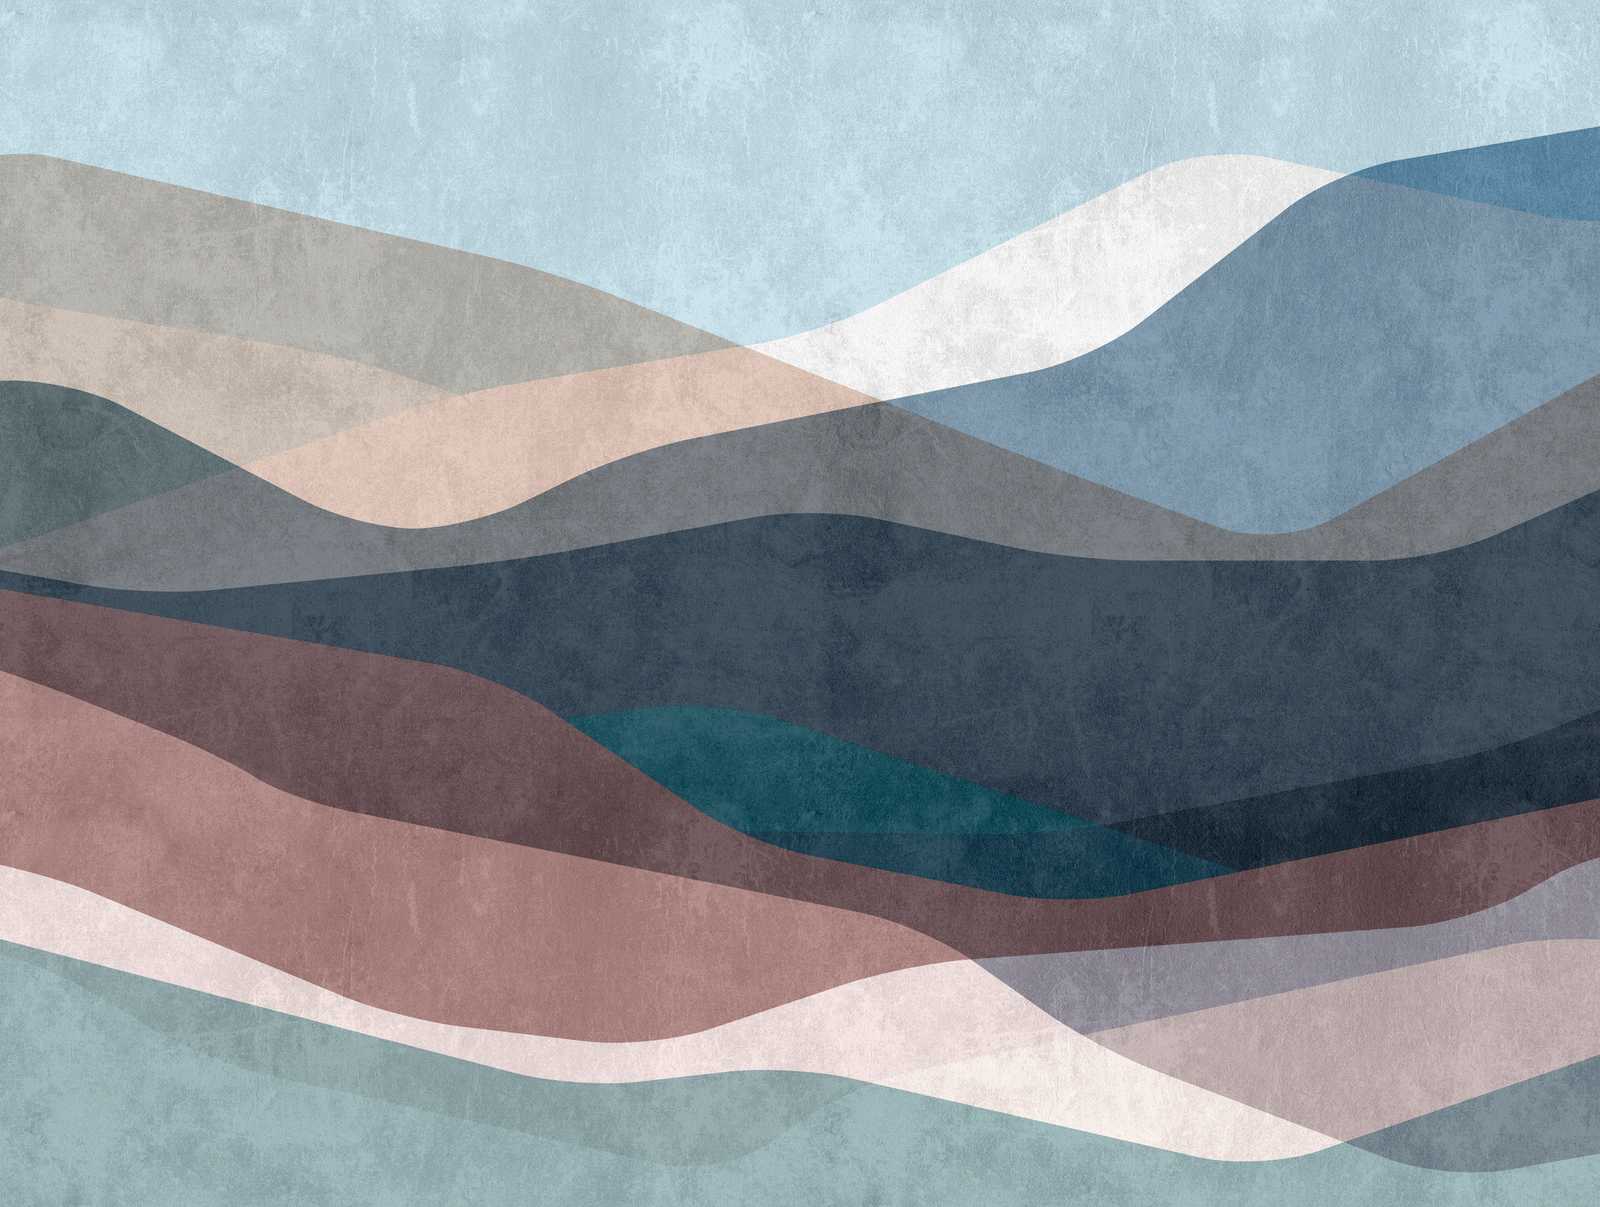             Papel pintado novedad - paisaje de papel pintado con motivo abstracto con estructura de yeso
        